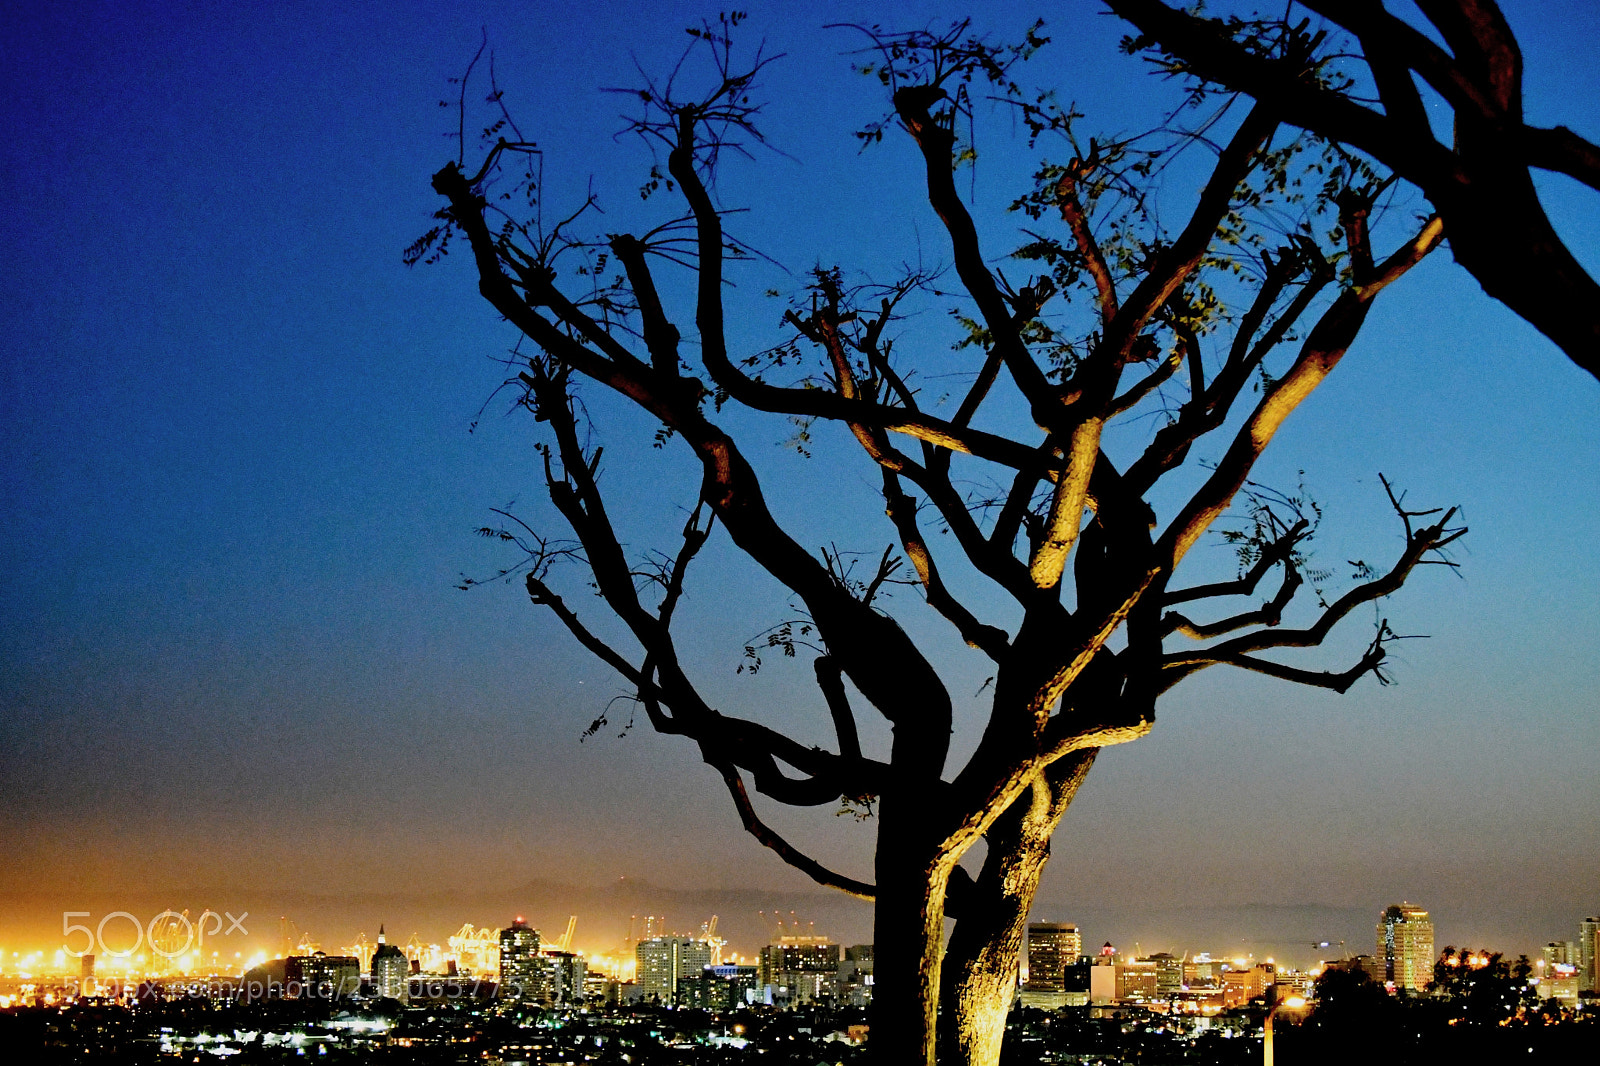 Nikon D7500 sample photo. City at night photography